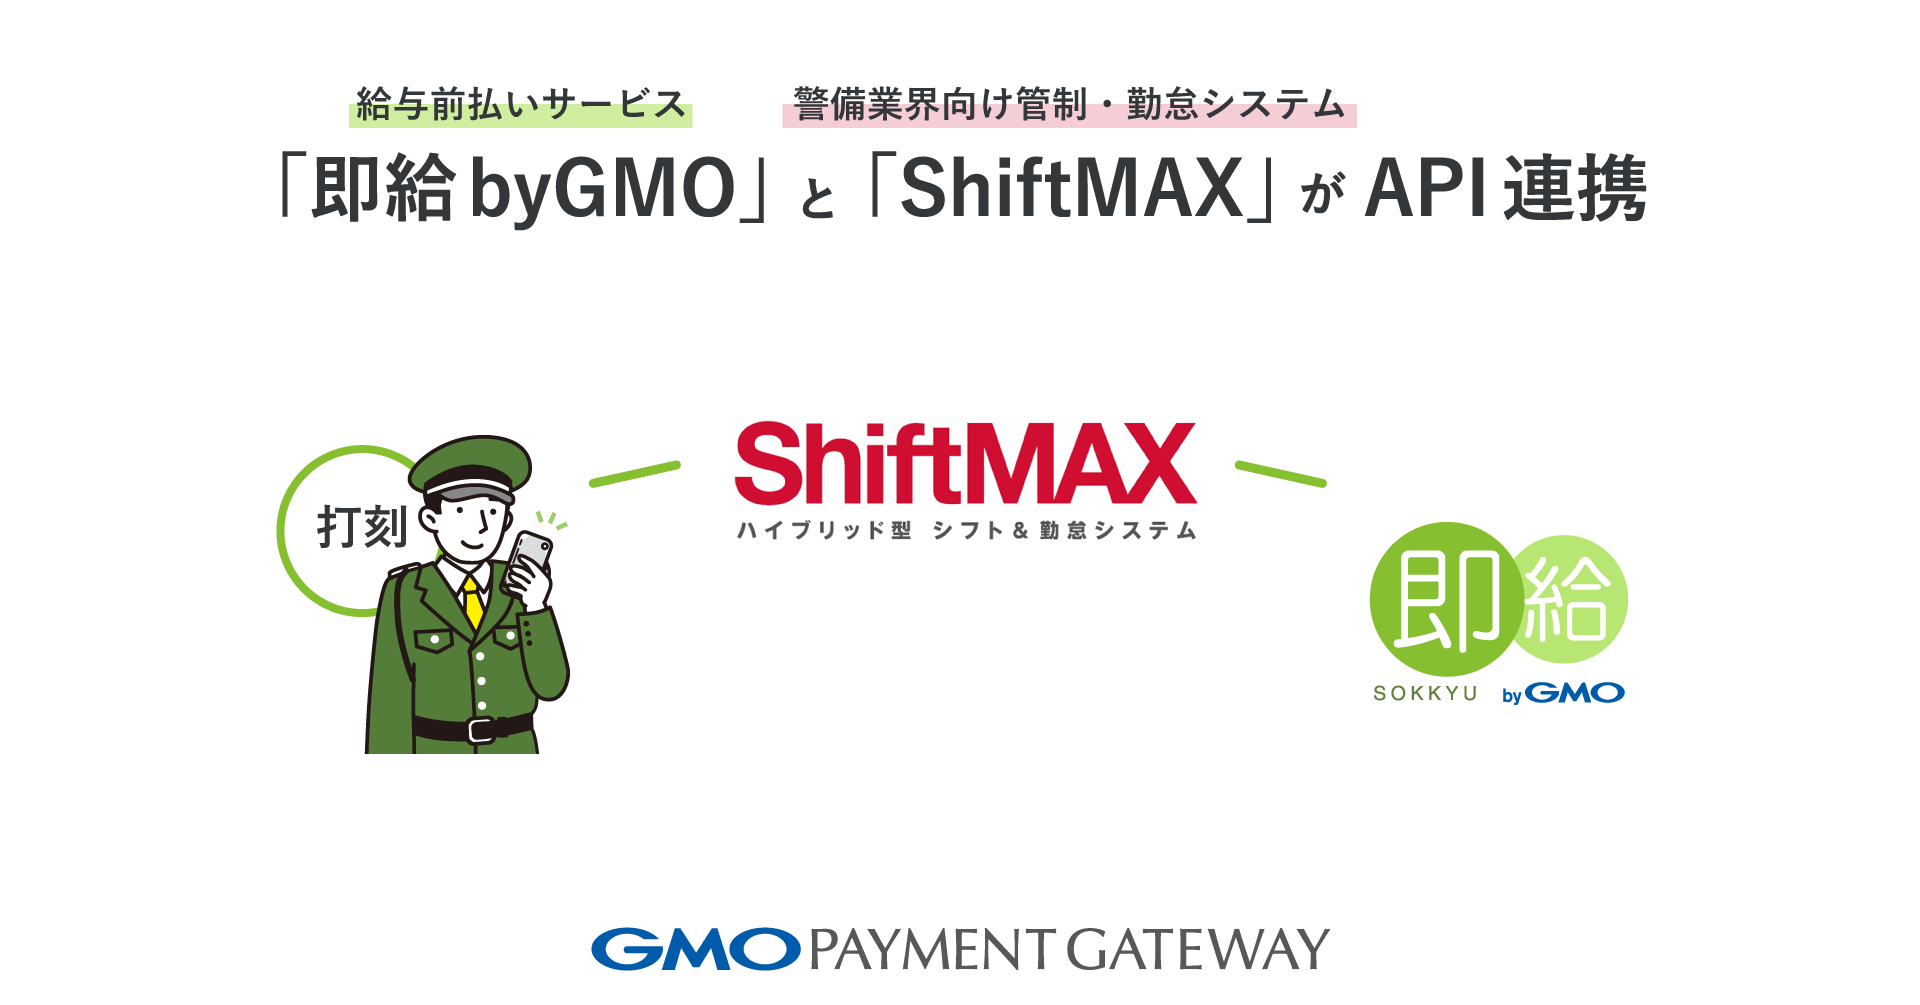 給与前払いサービス「即給 byGMO」と警備業界向け管制・勤怠システム「ShiftMAX」がAPI連携